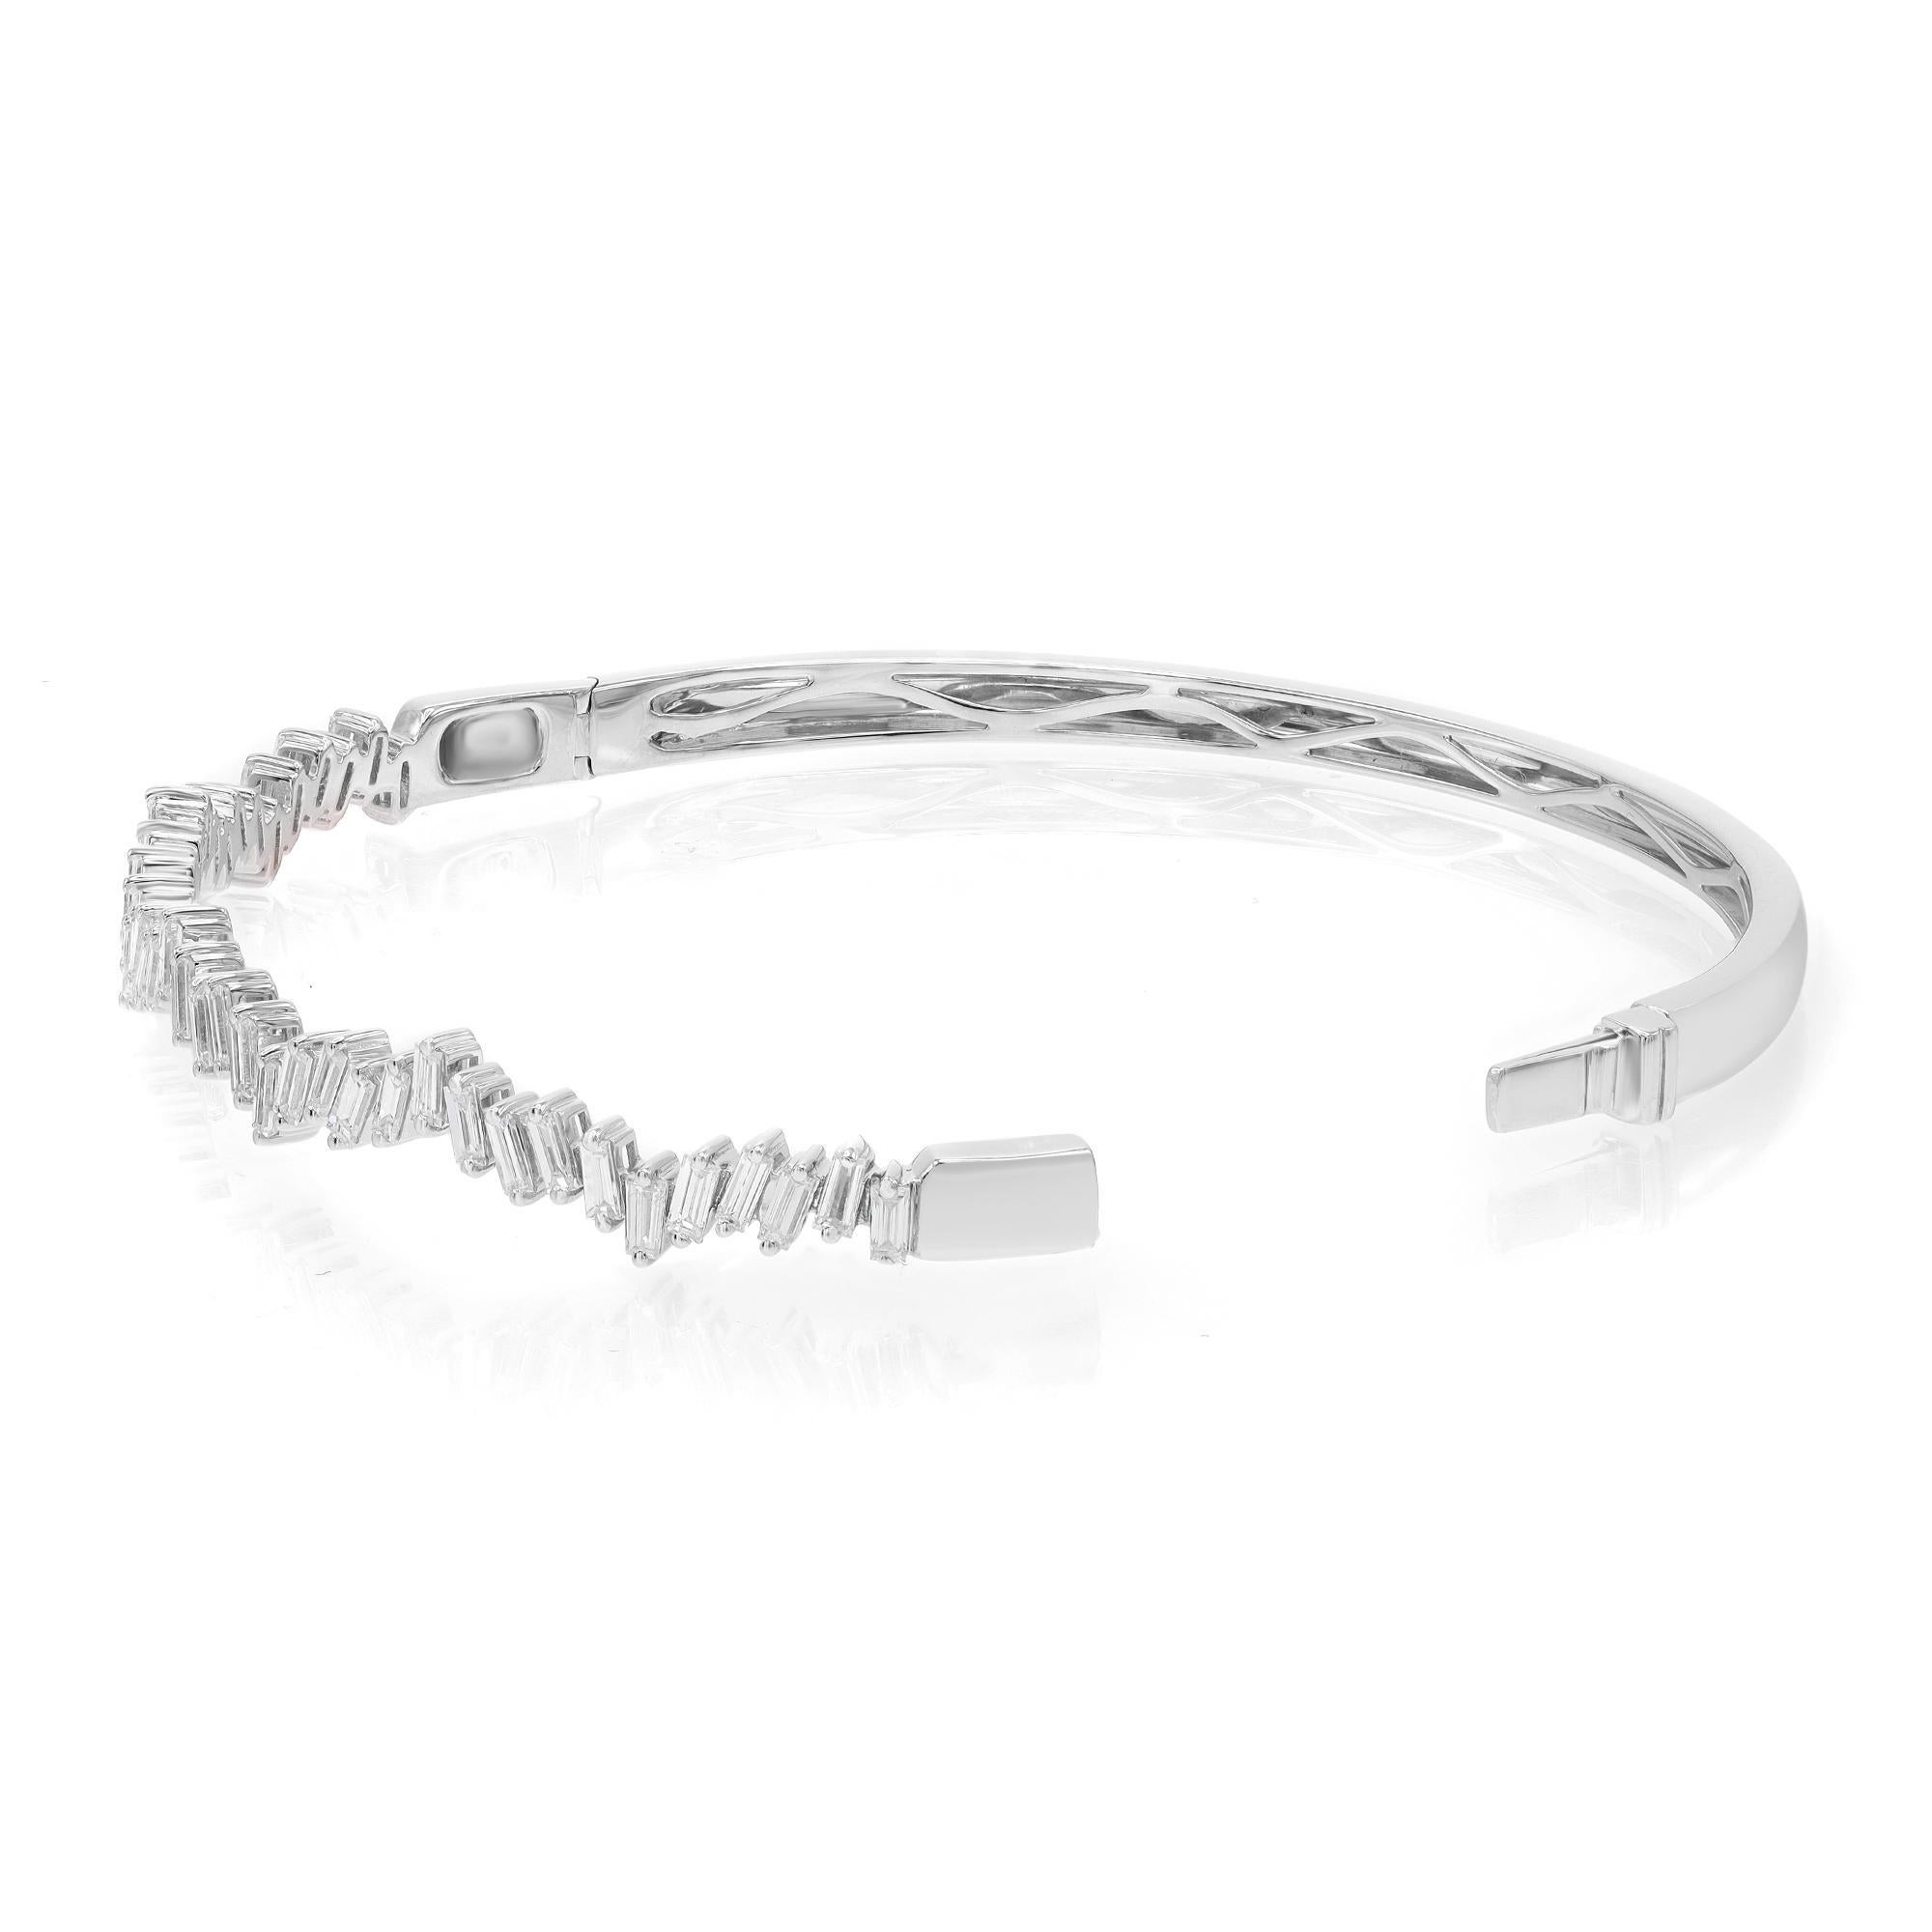 Modern Rachel Koen Baguette Cut Diamond Bangle Bracelet 18K White Gold 1.57Cttw For Sale